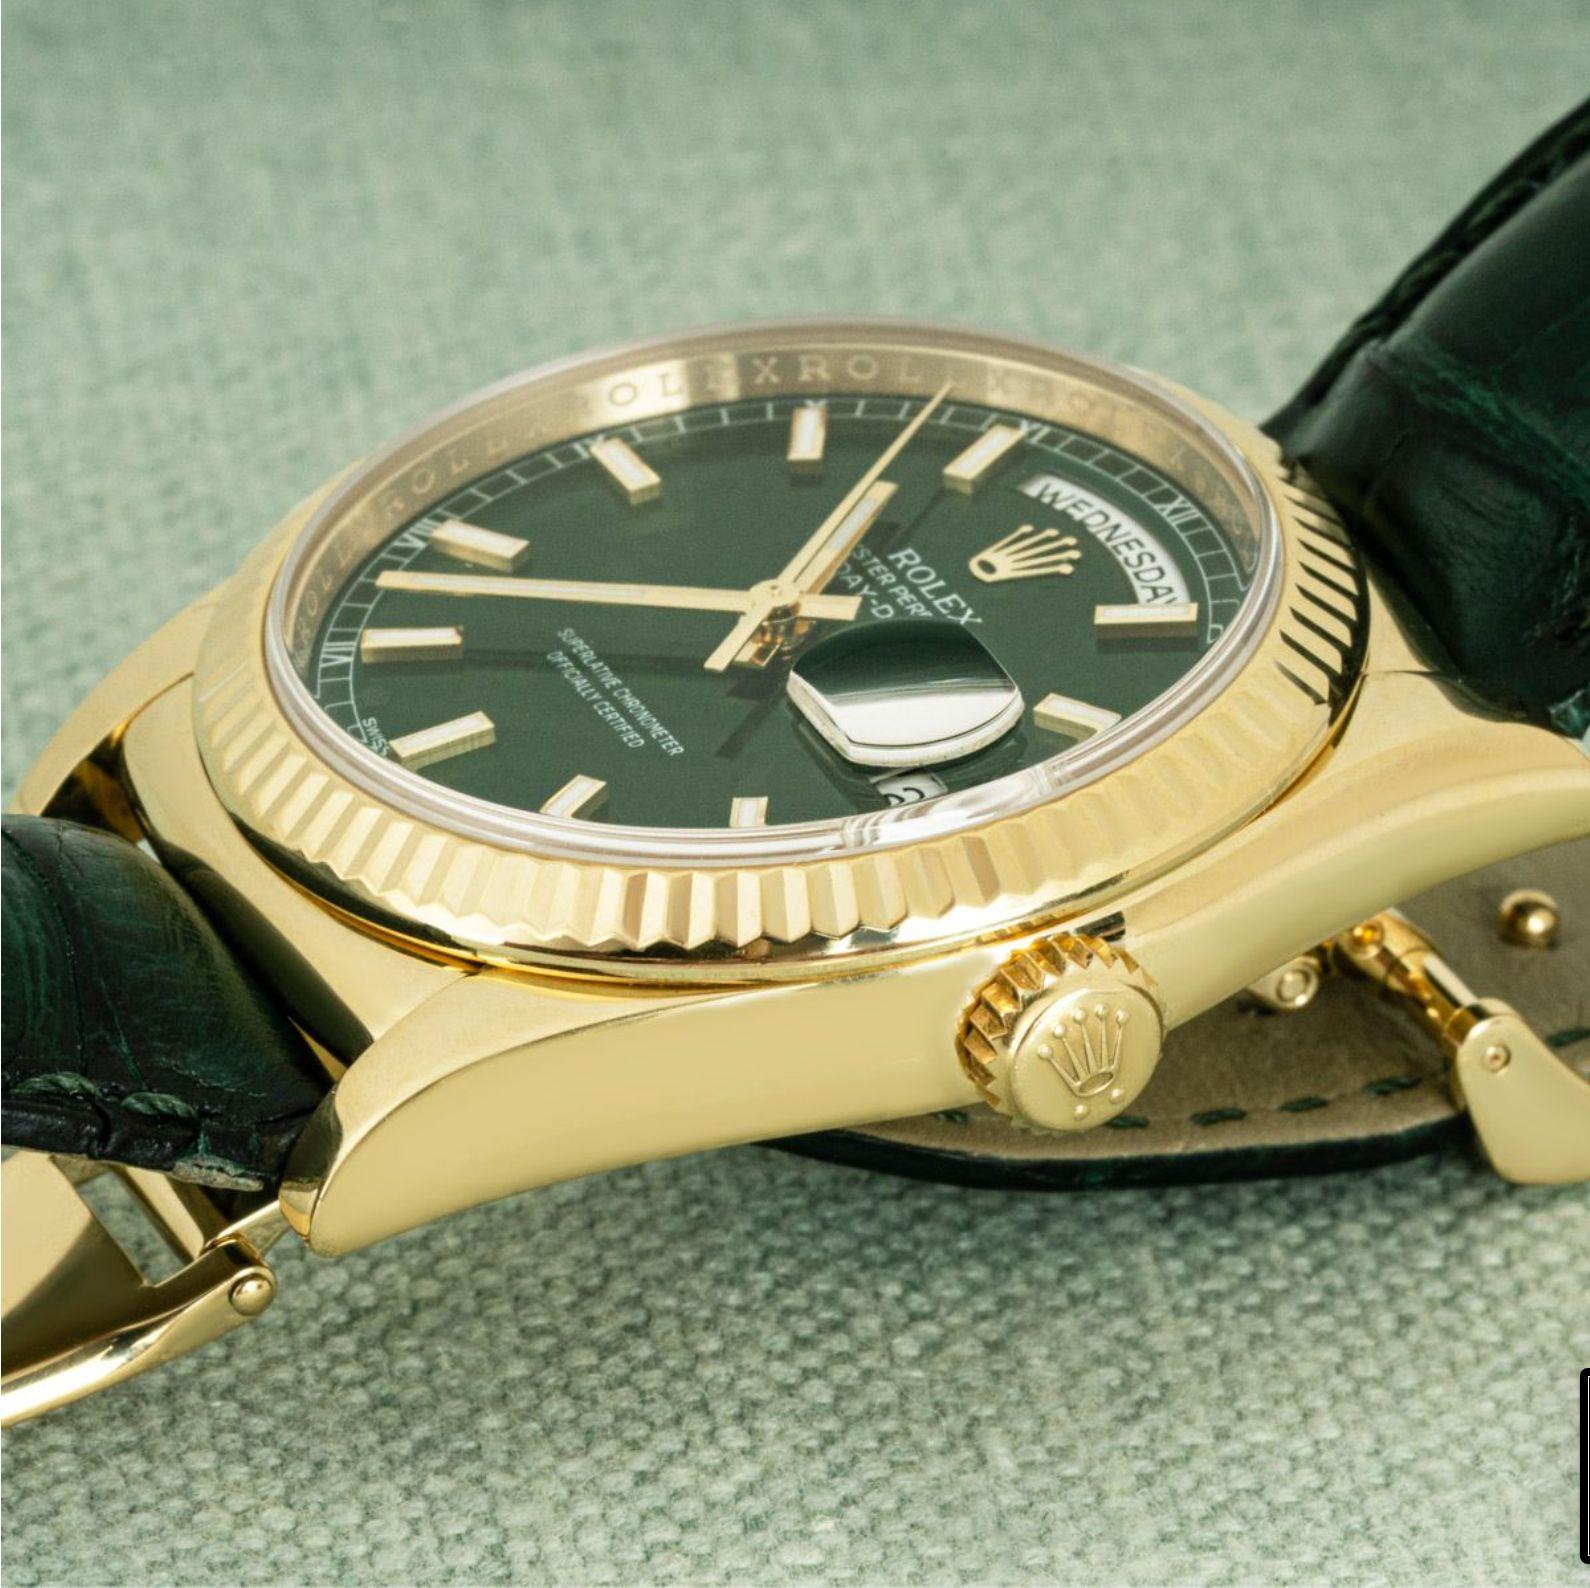 Une Day-Date de 36 mm en or jaune de Rolex. Le cadran est vert et la lunette cannelée. Le cadran est complété par un bracelet en cuir vert Rolex équipé d'une boucle déployante en or jaune d'origine. Elle est équipée d'un verre saphir et d'un